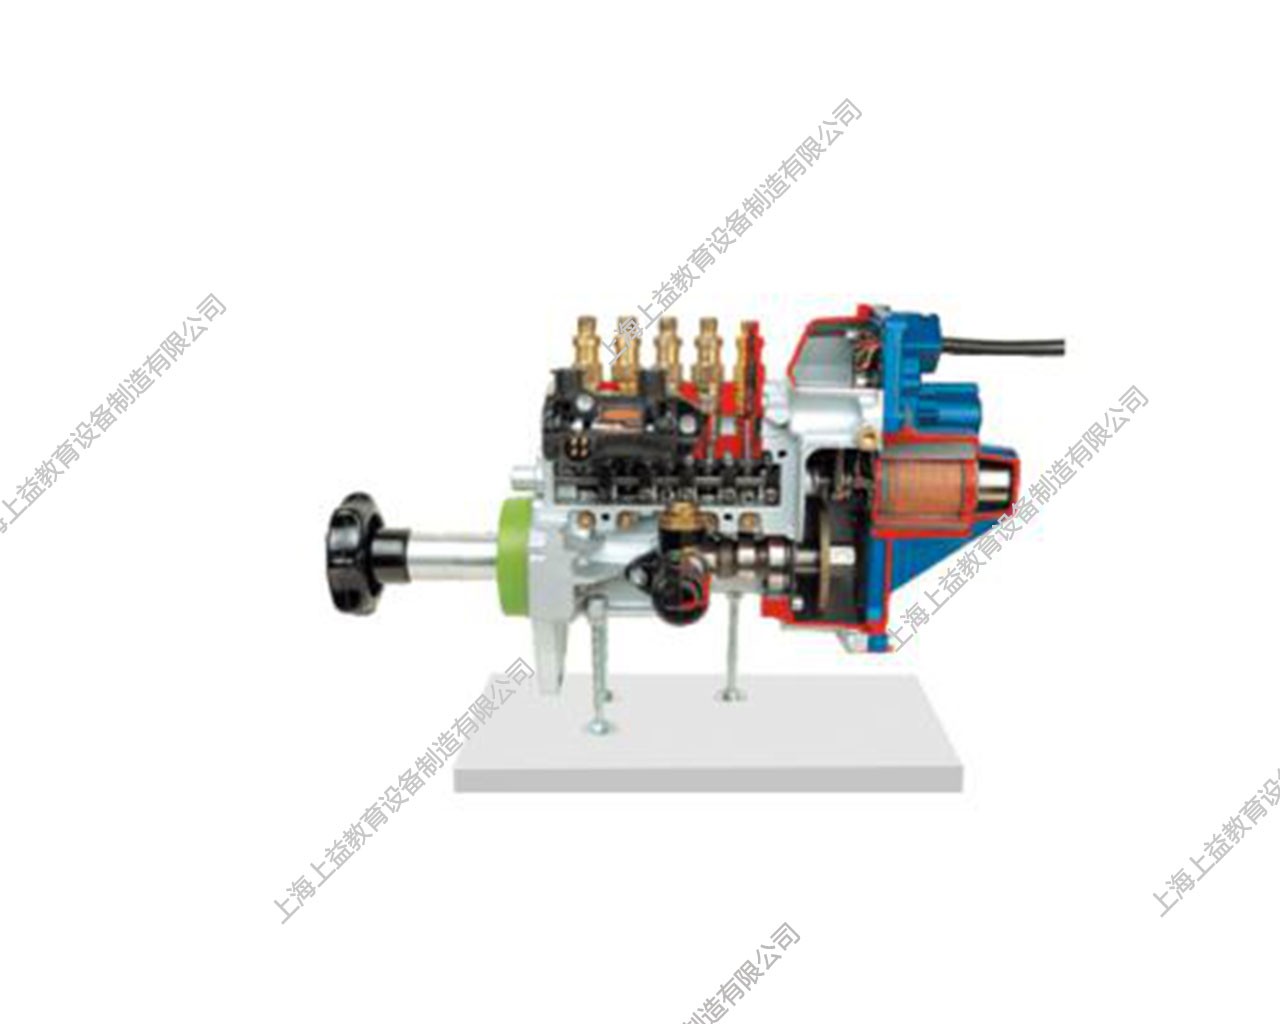 電控直列噴射泵解剖模型(EDC)